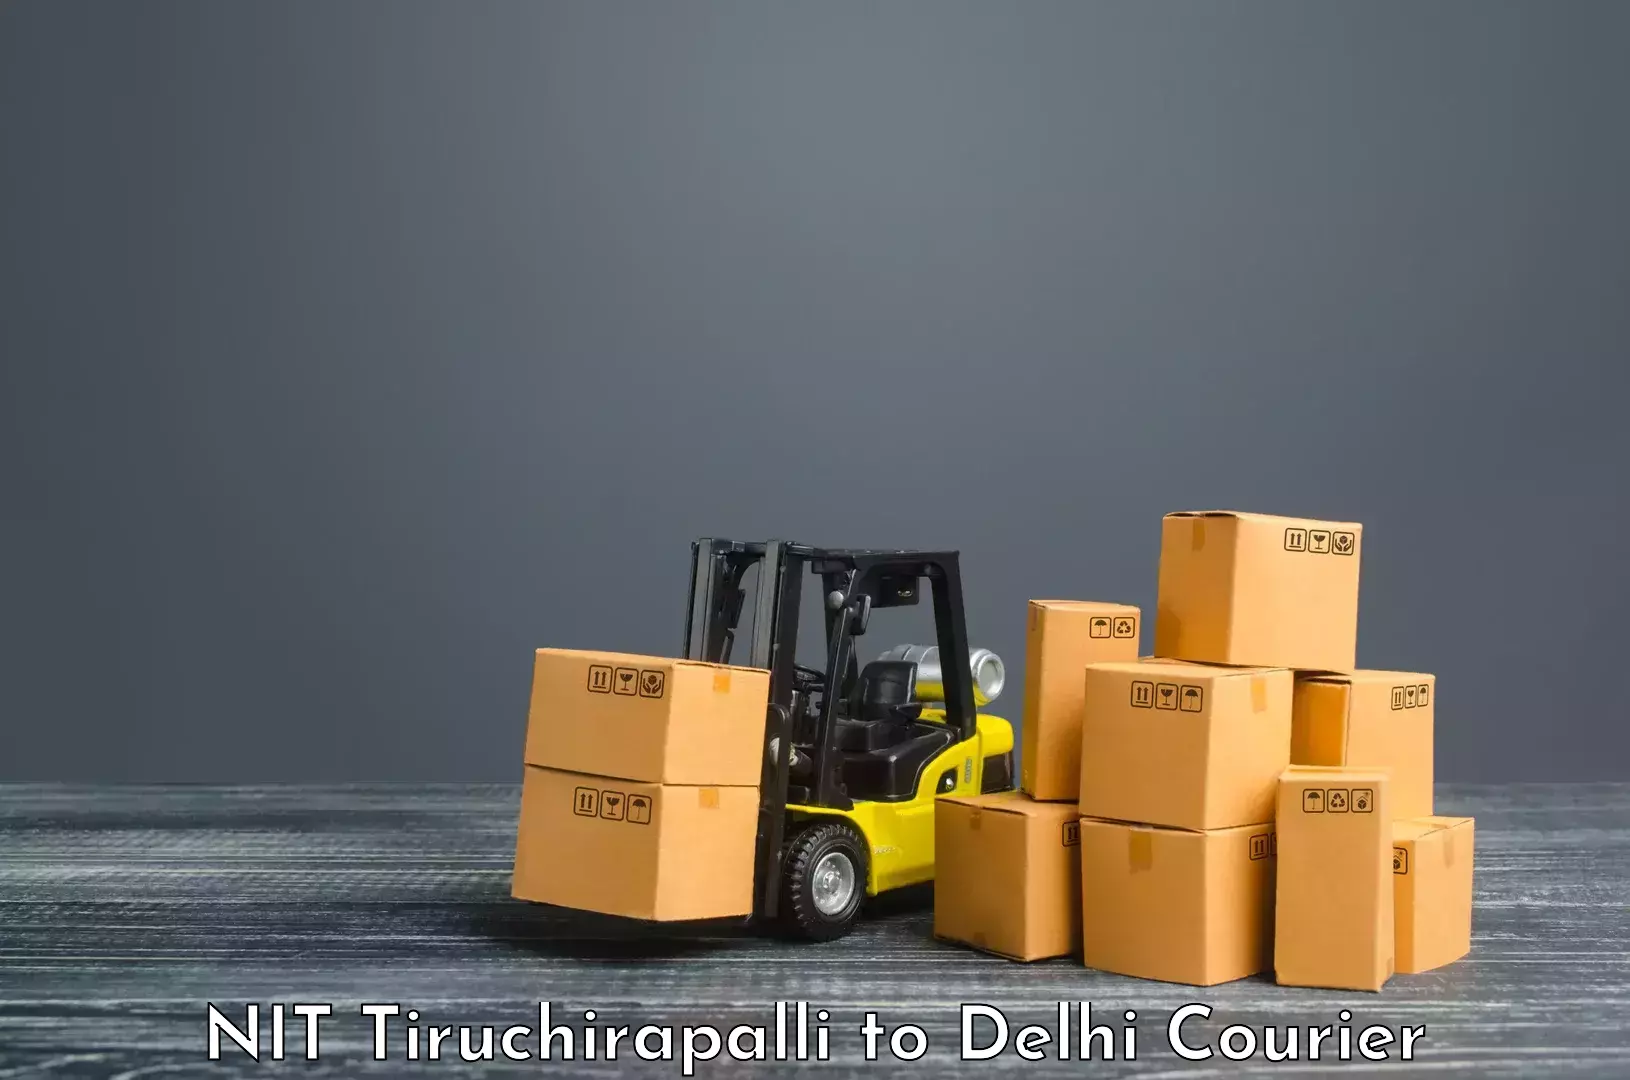 Customer-focused courier NIT Tiruchirapalli to IIT Delhi